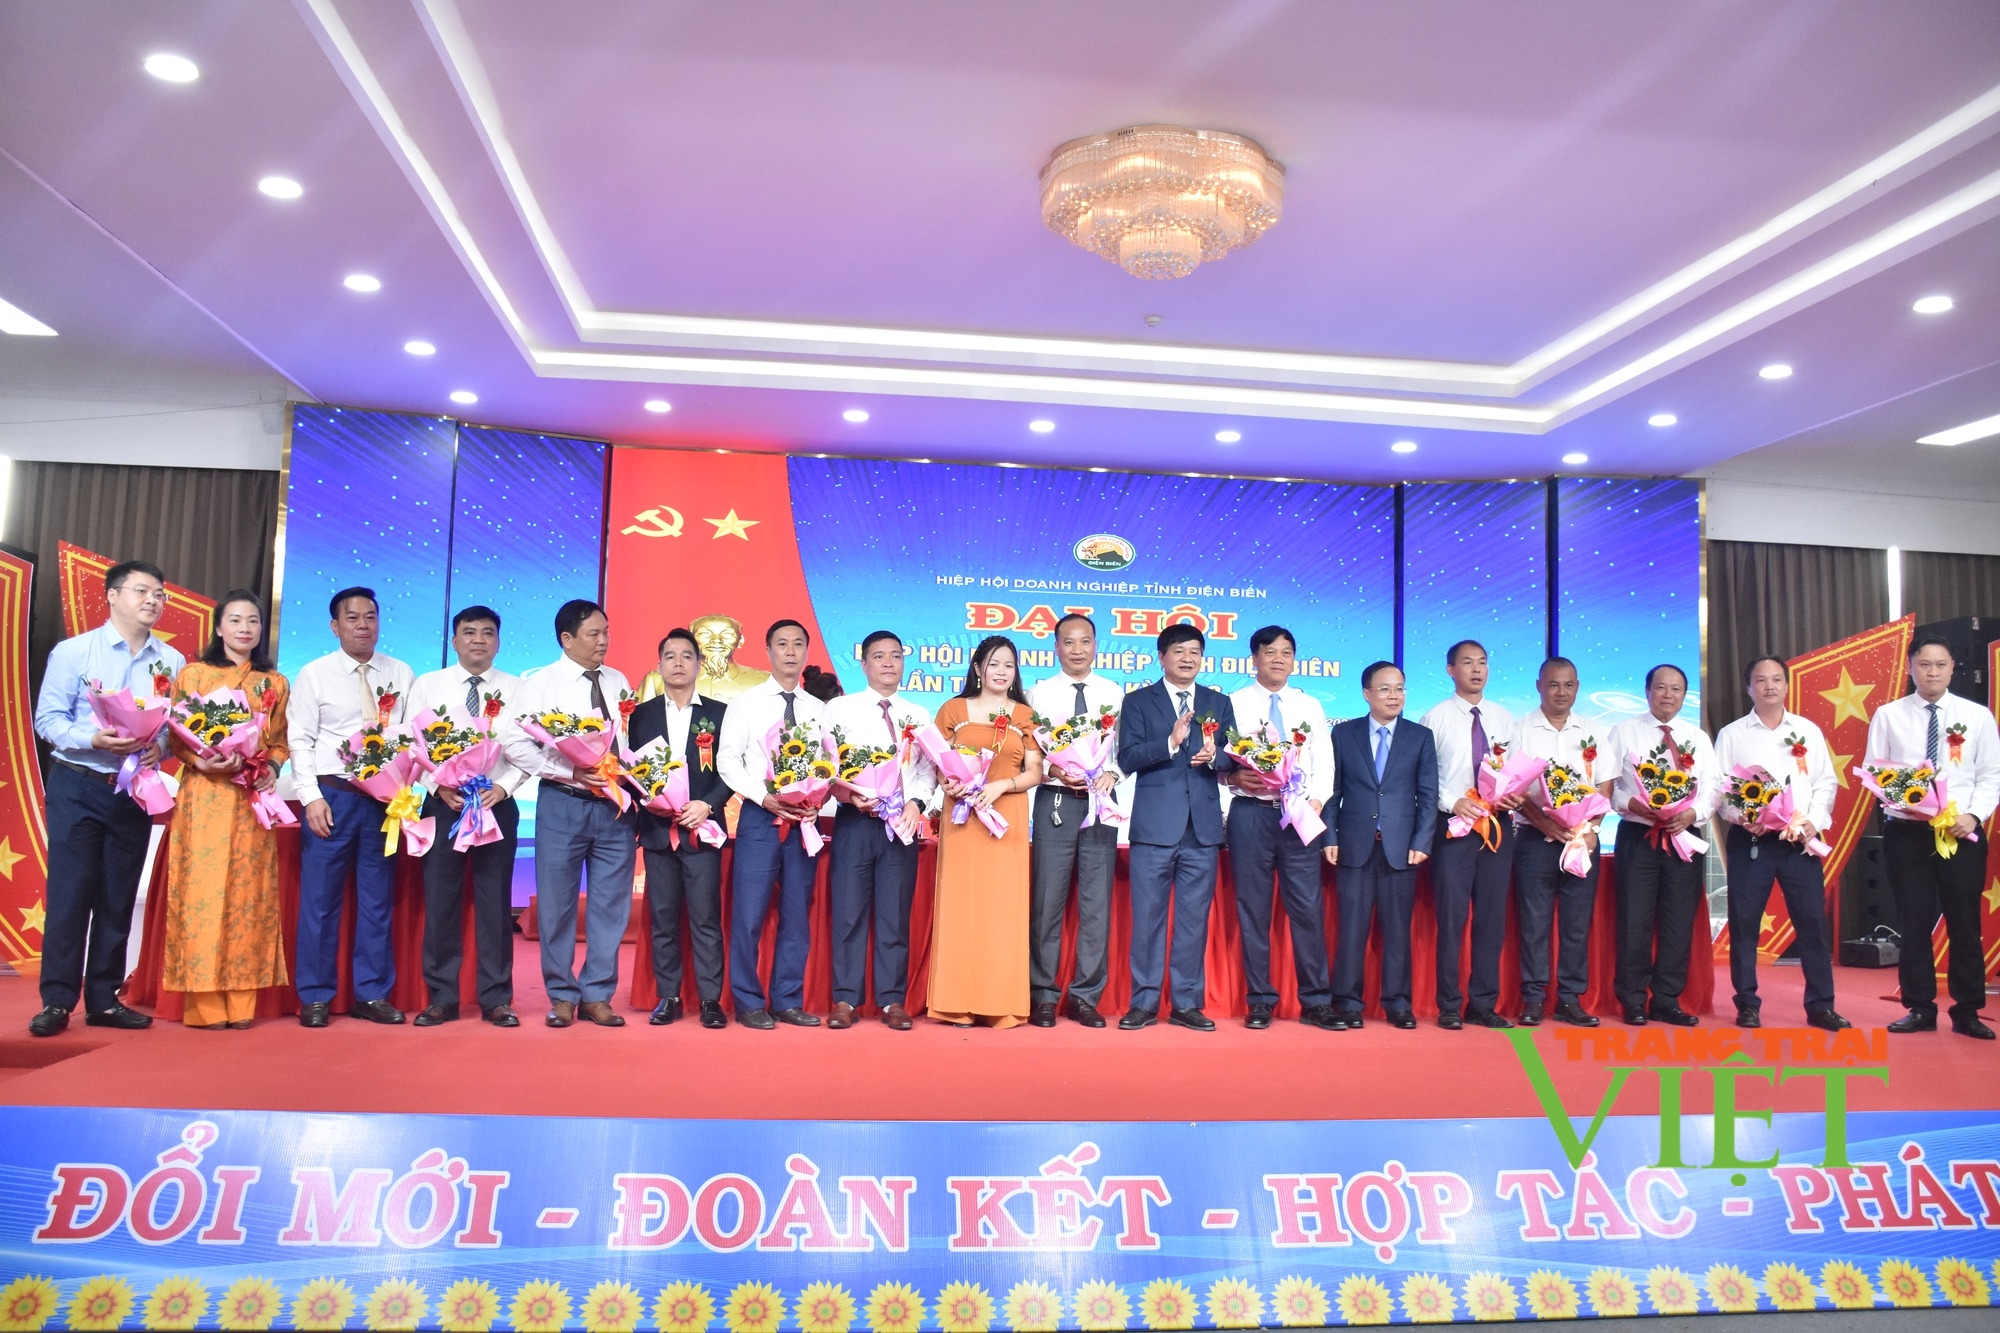 Hiệp hội Doanh nghiệp tỉnh Điện Biên làm tốt vai trò cầu nối doanh nghiệp - chính quyền - Ảnh 2.